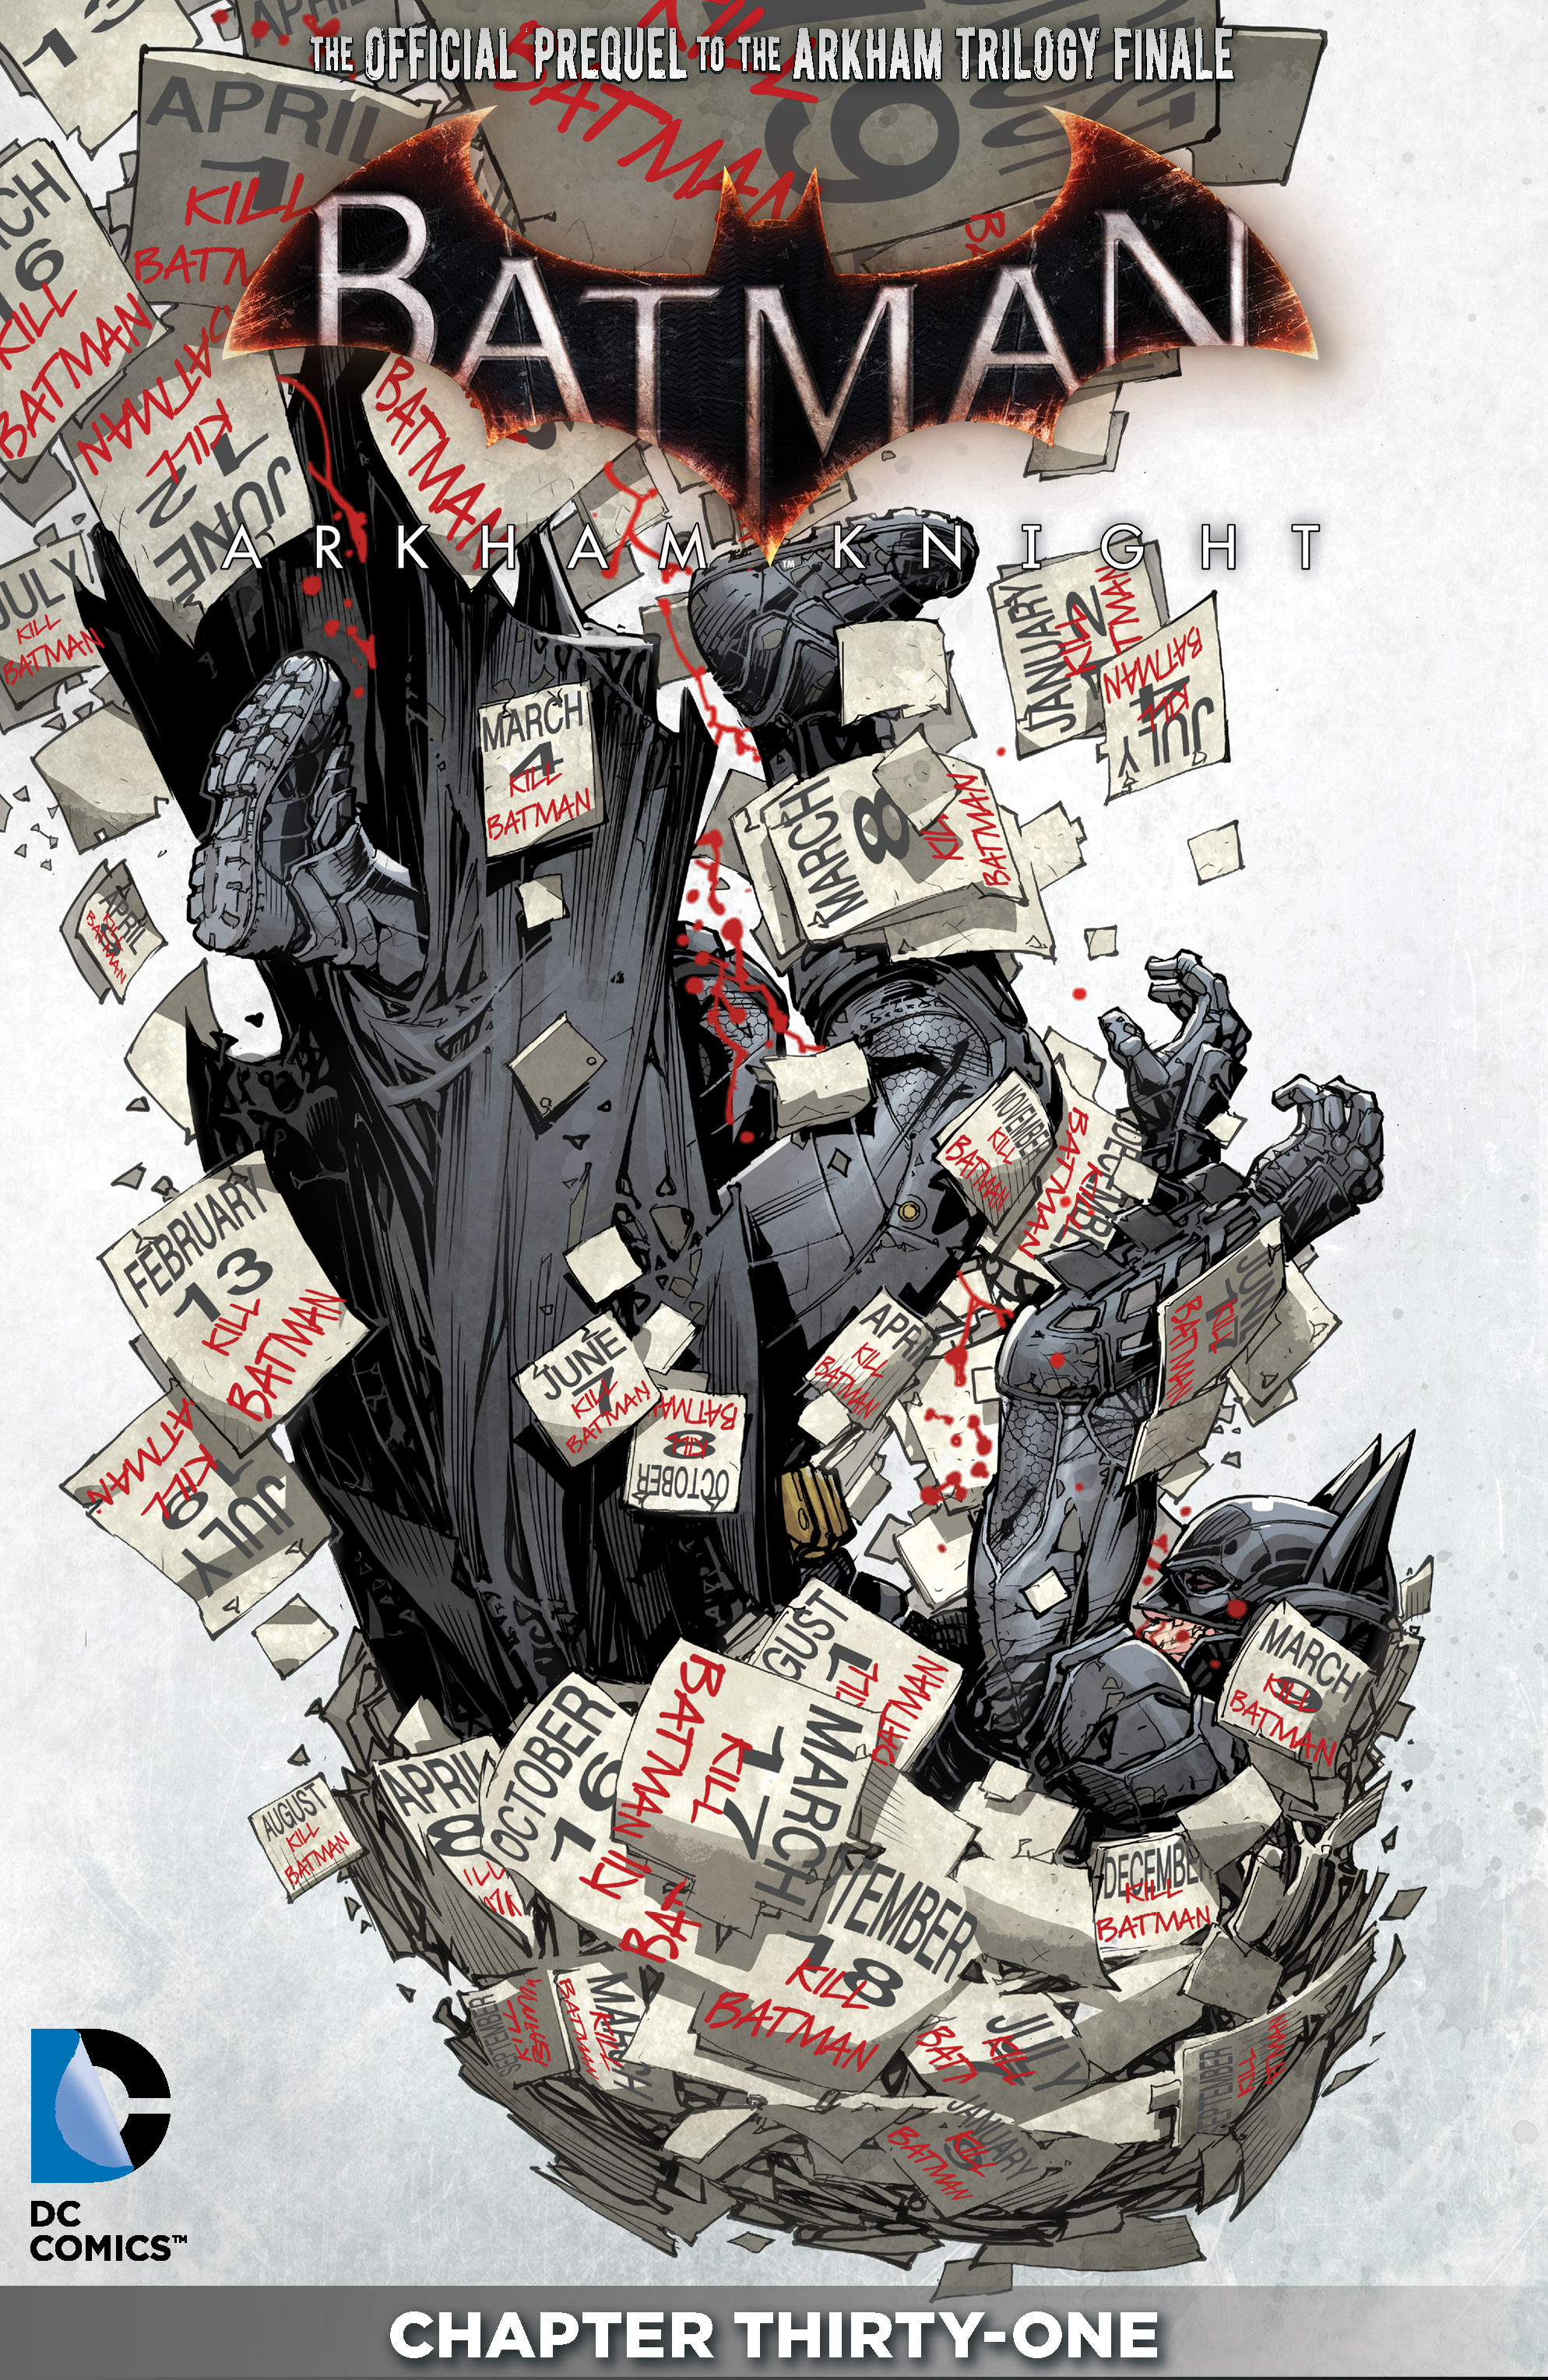 Batman: Arkham Knight #31 preview images